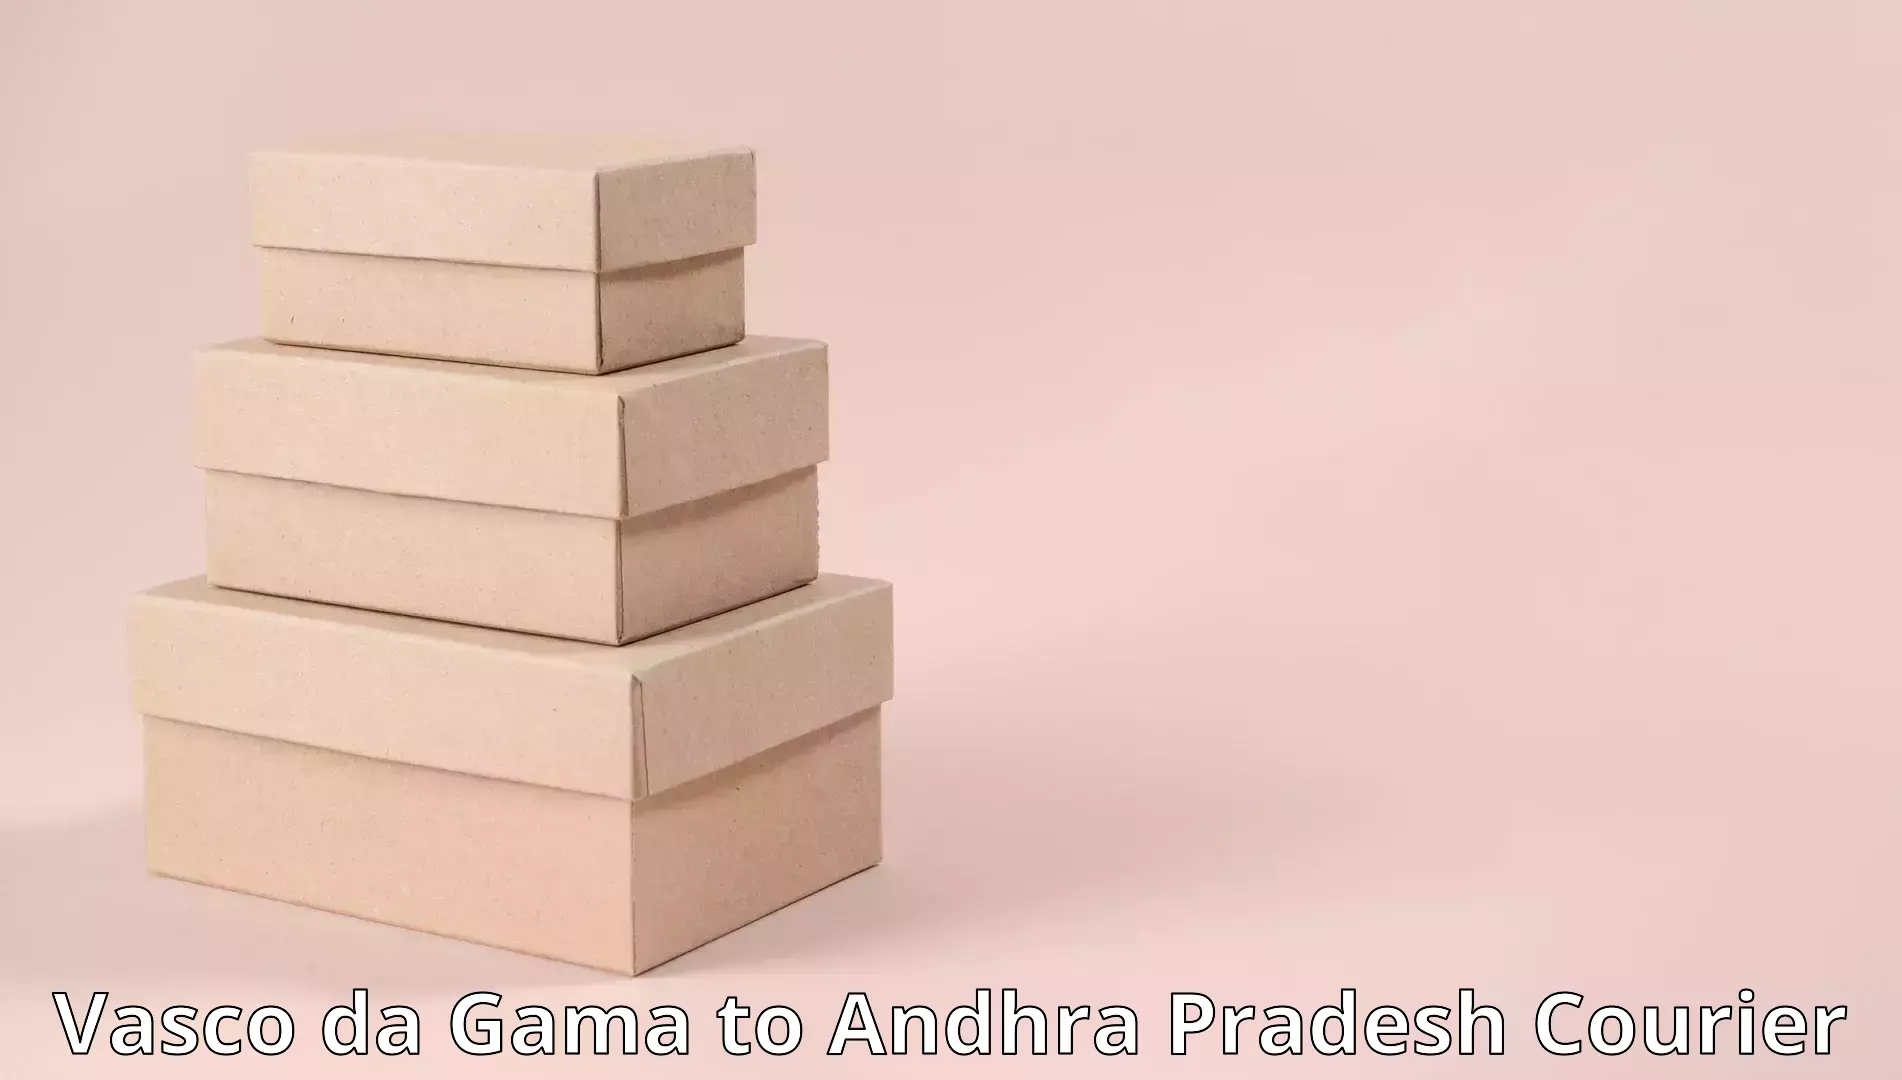 Home goods moving company Vasco da Gama to Andhra Pradesh